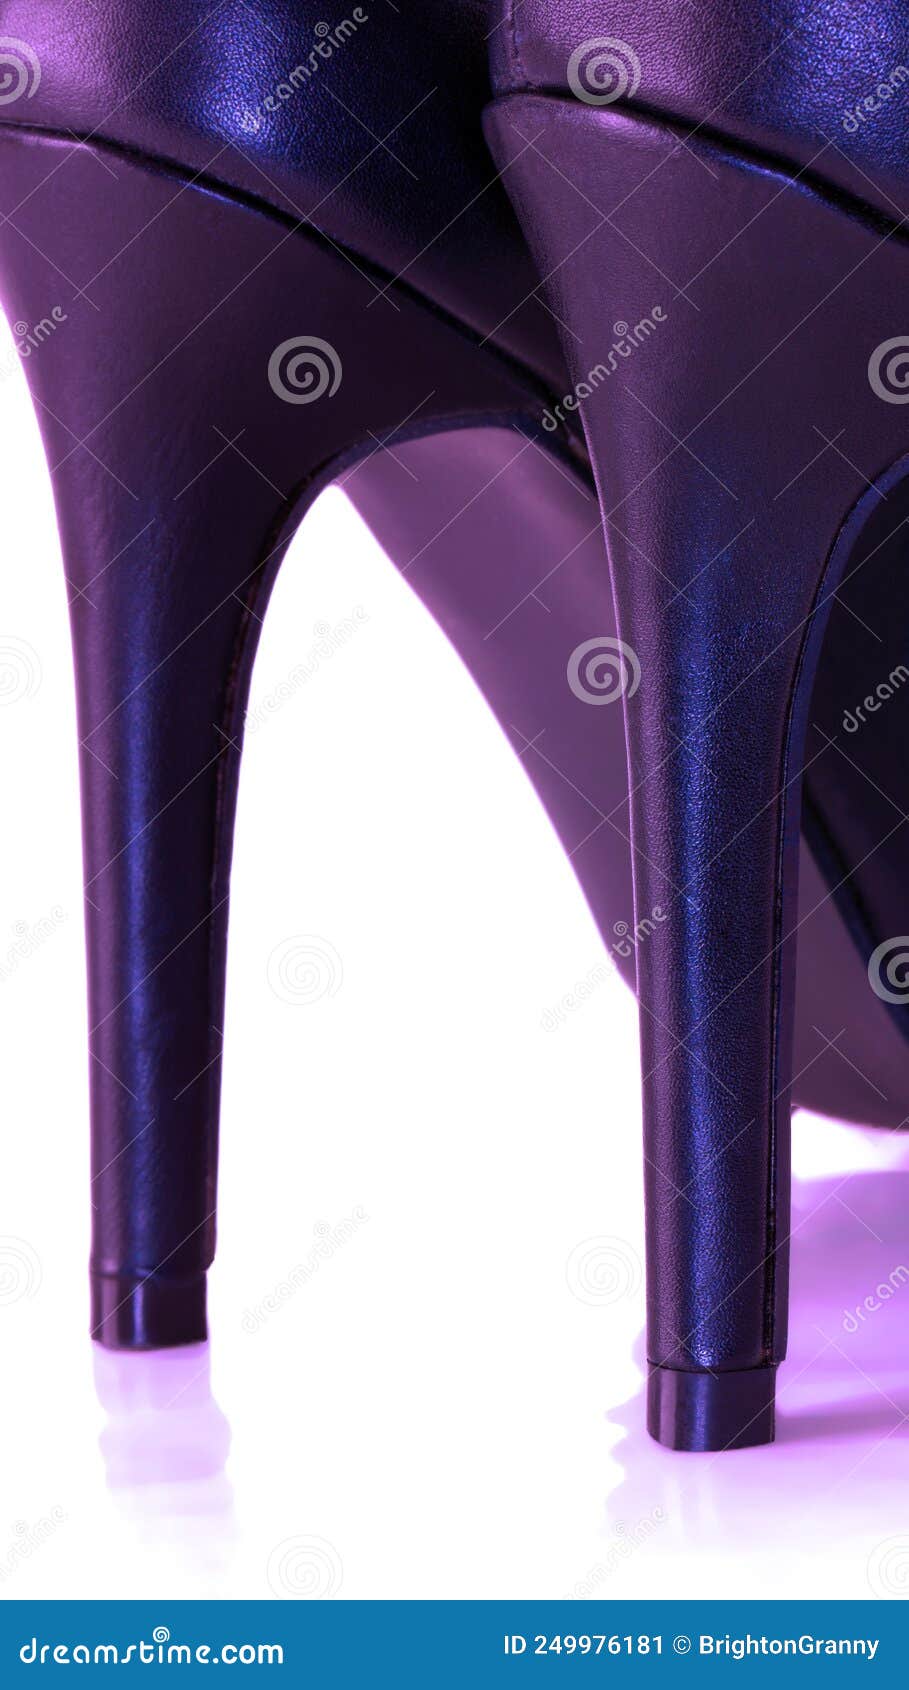 L K Bennett Dark Purple Indigo Blue Suede Leather Heels with Bow Size 39  NEW | eBay